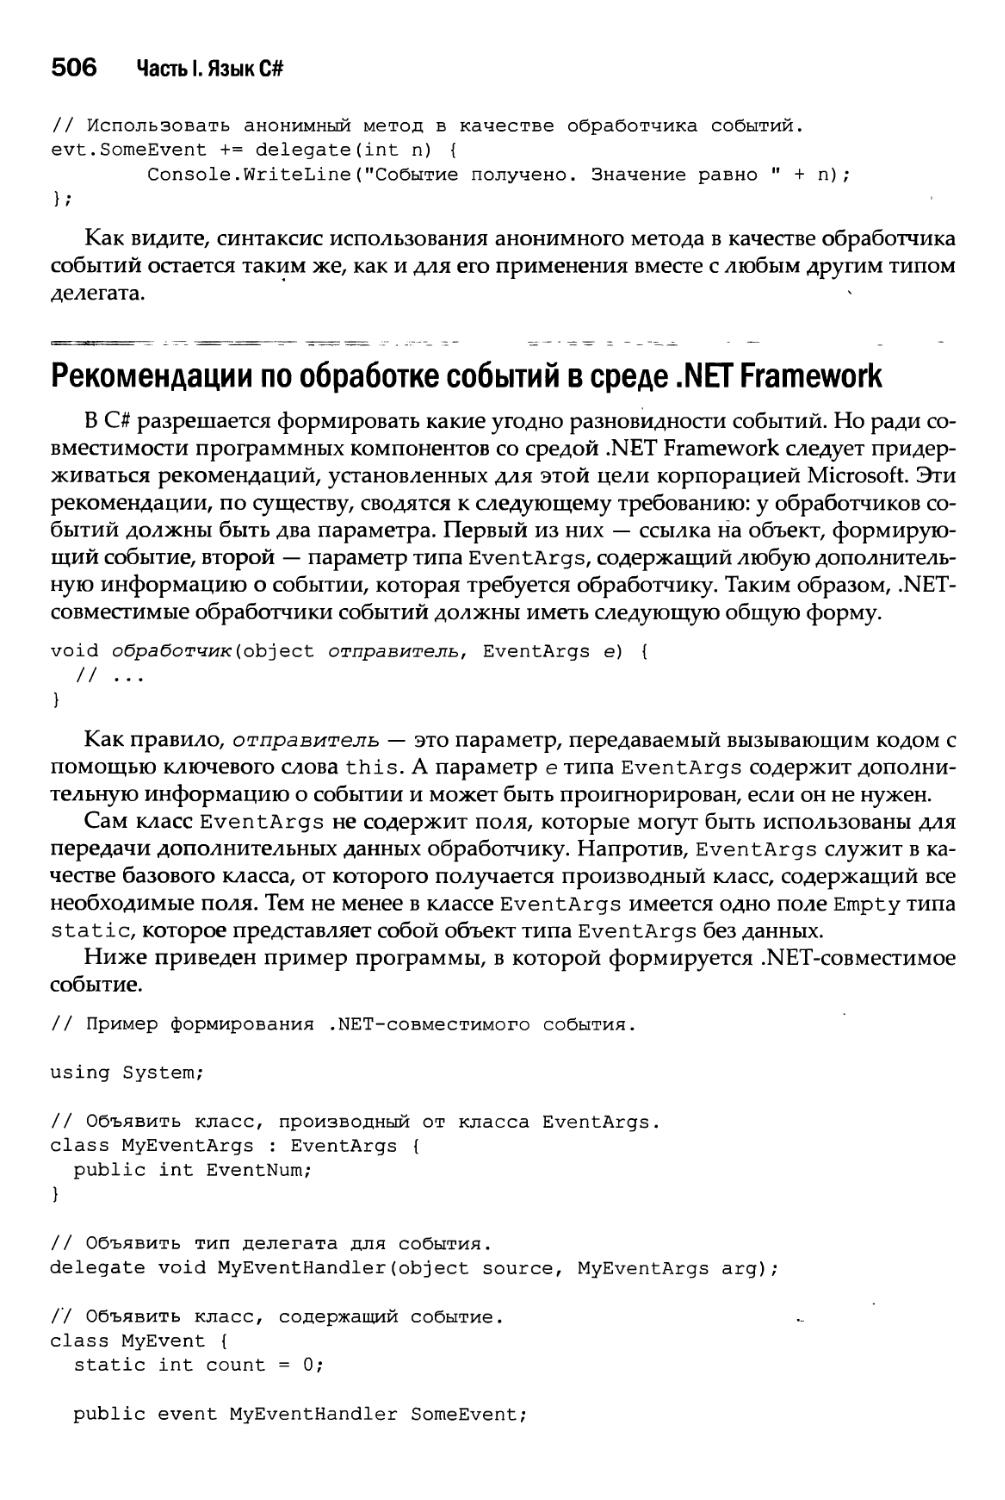 Рекомендации по обработке событий в среде .NET Framework